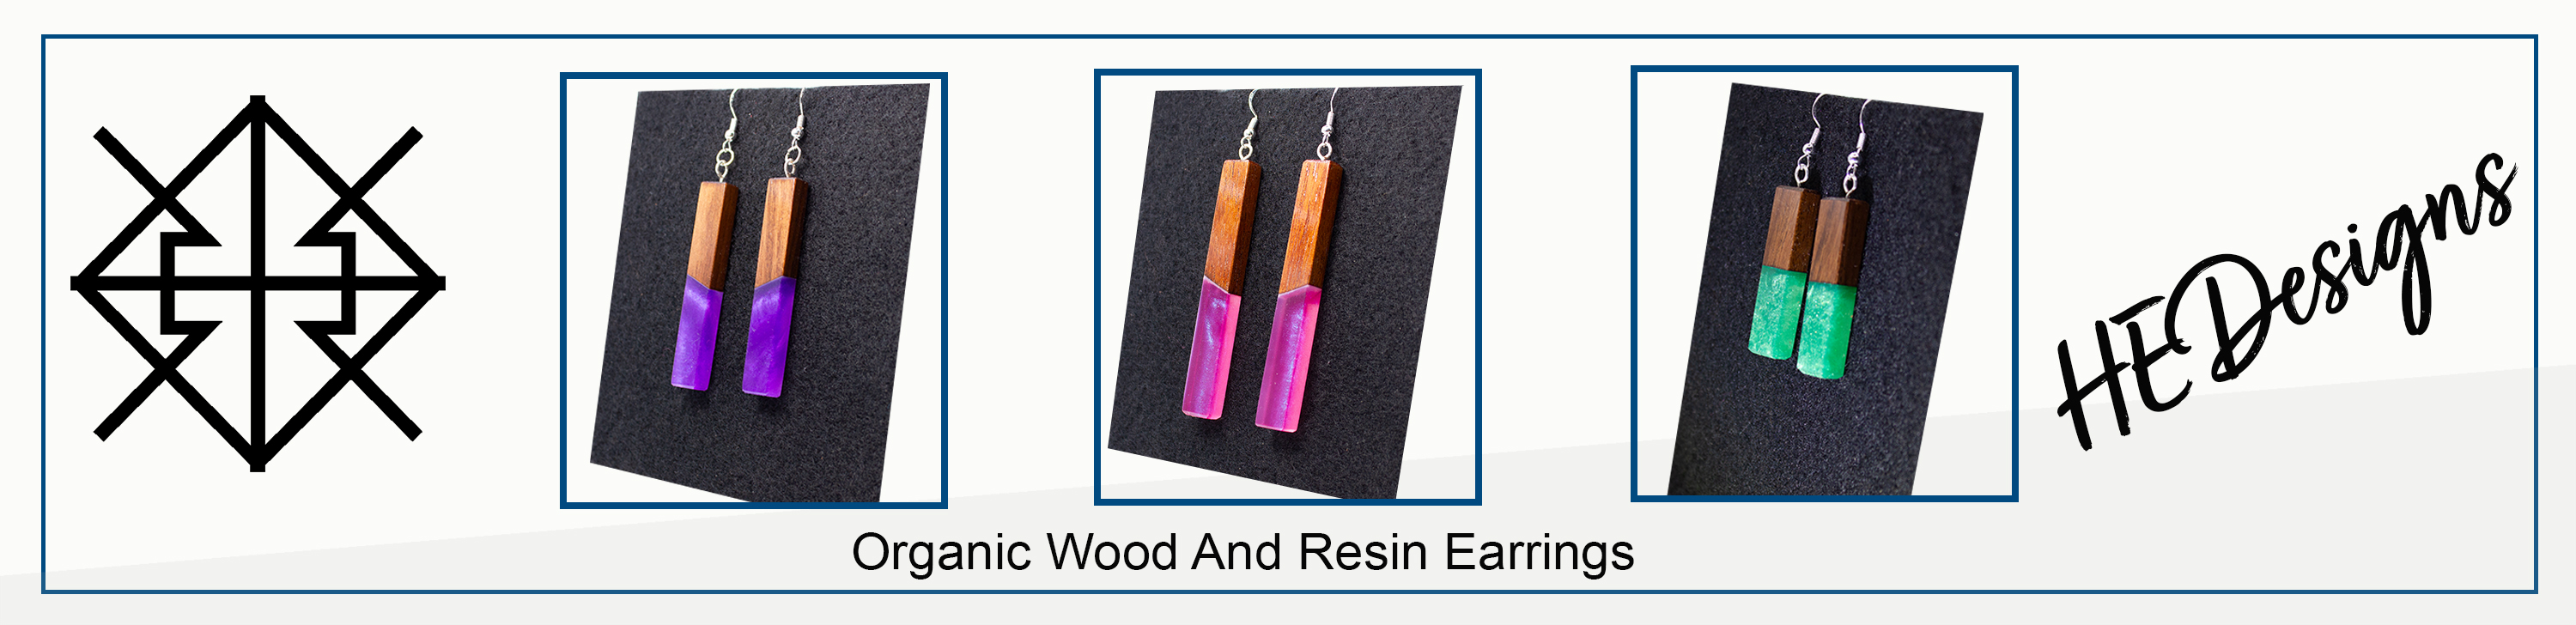 Hedesigns wood earrings